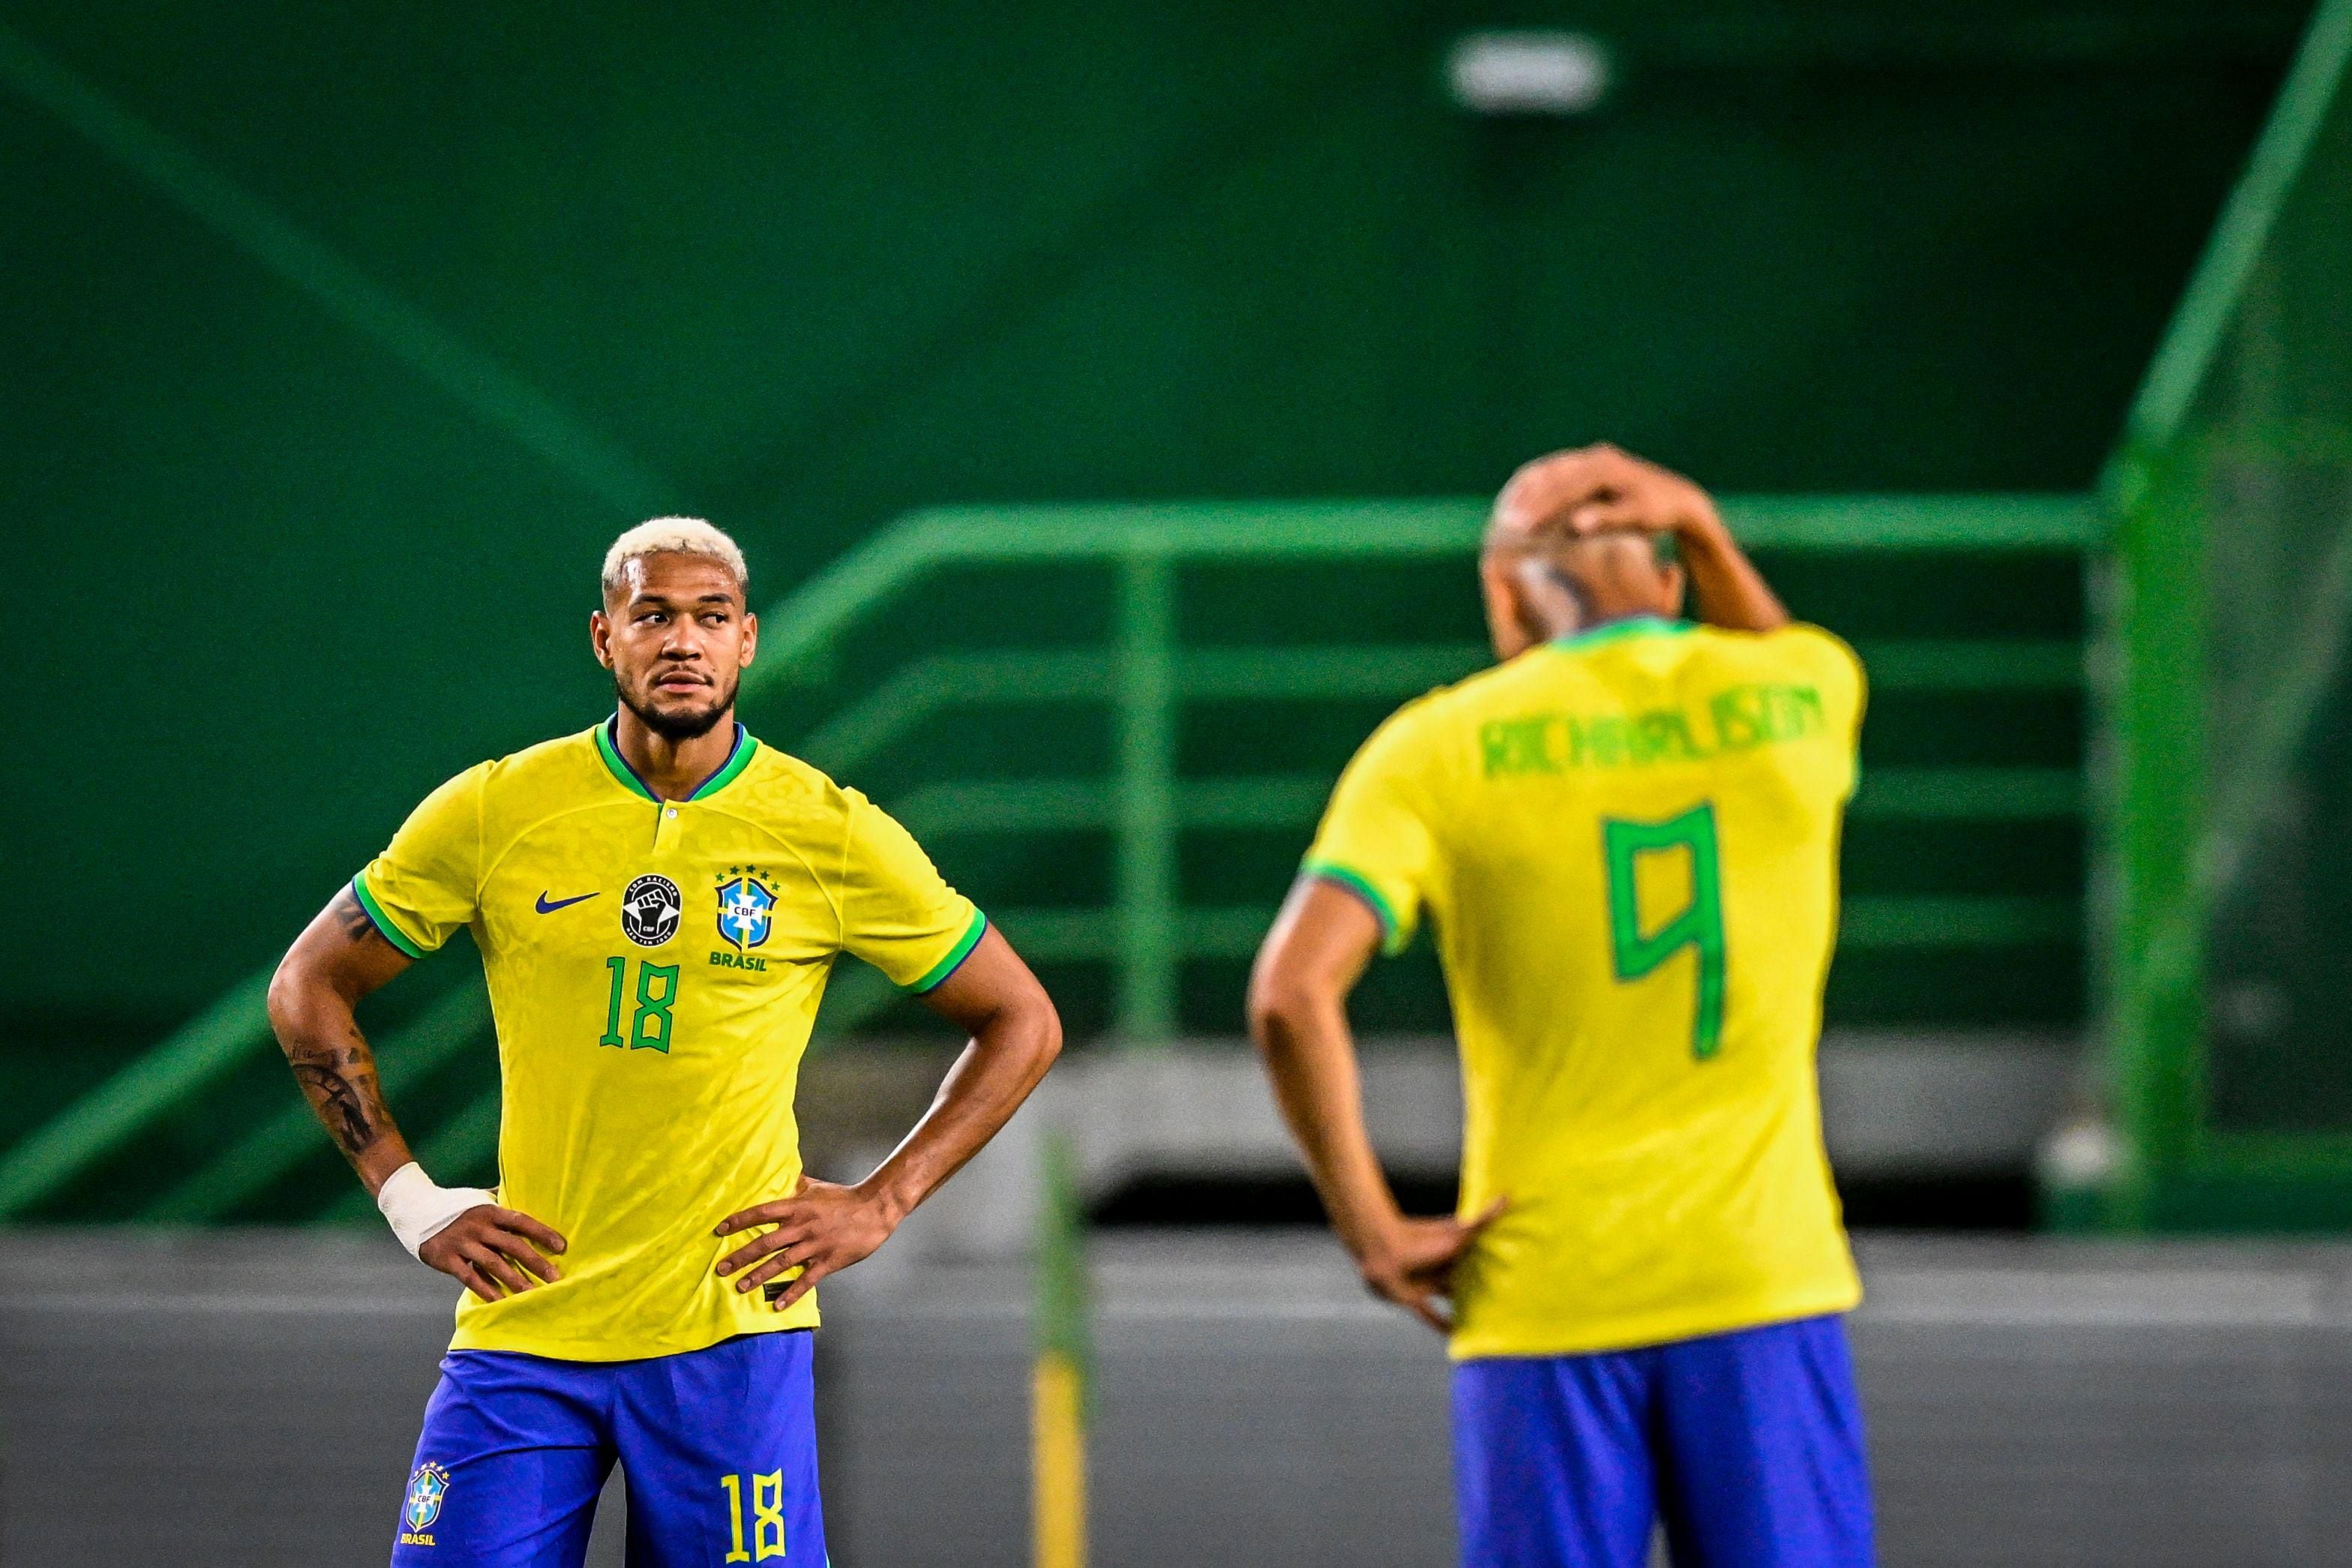 CBF Futebol on X: Se liga na escalação do Brasil para enfrentar a